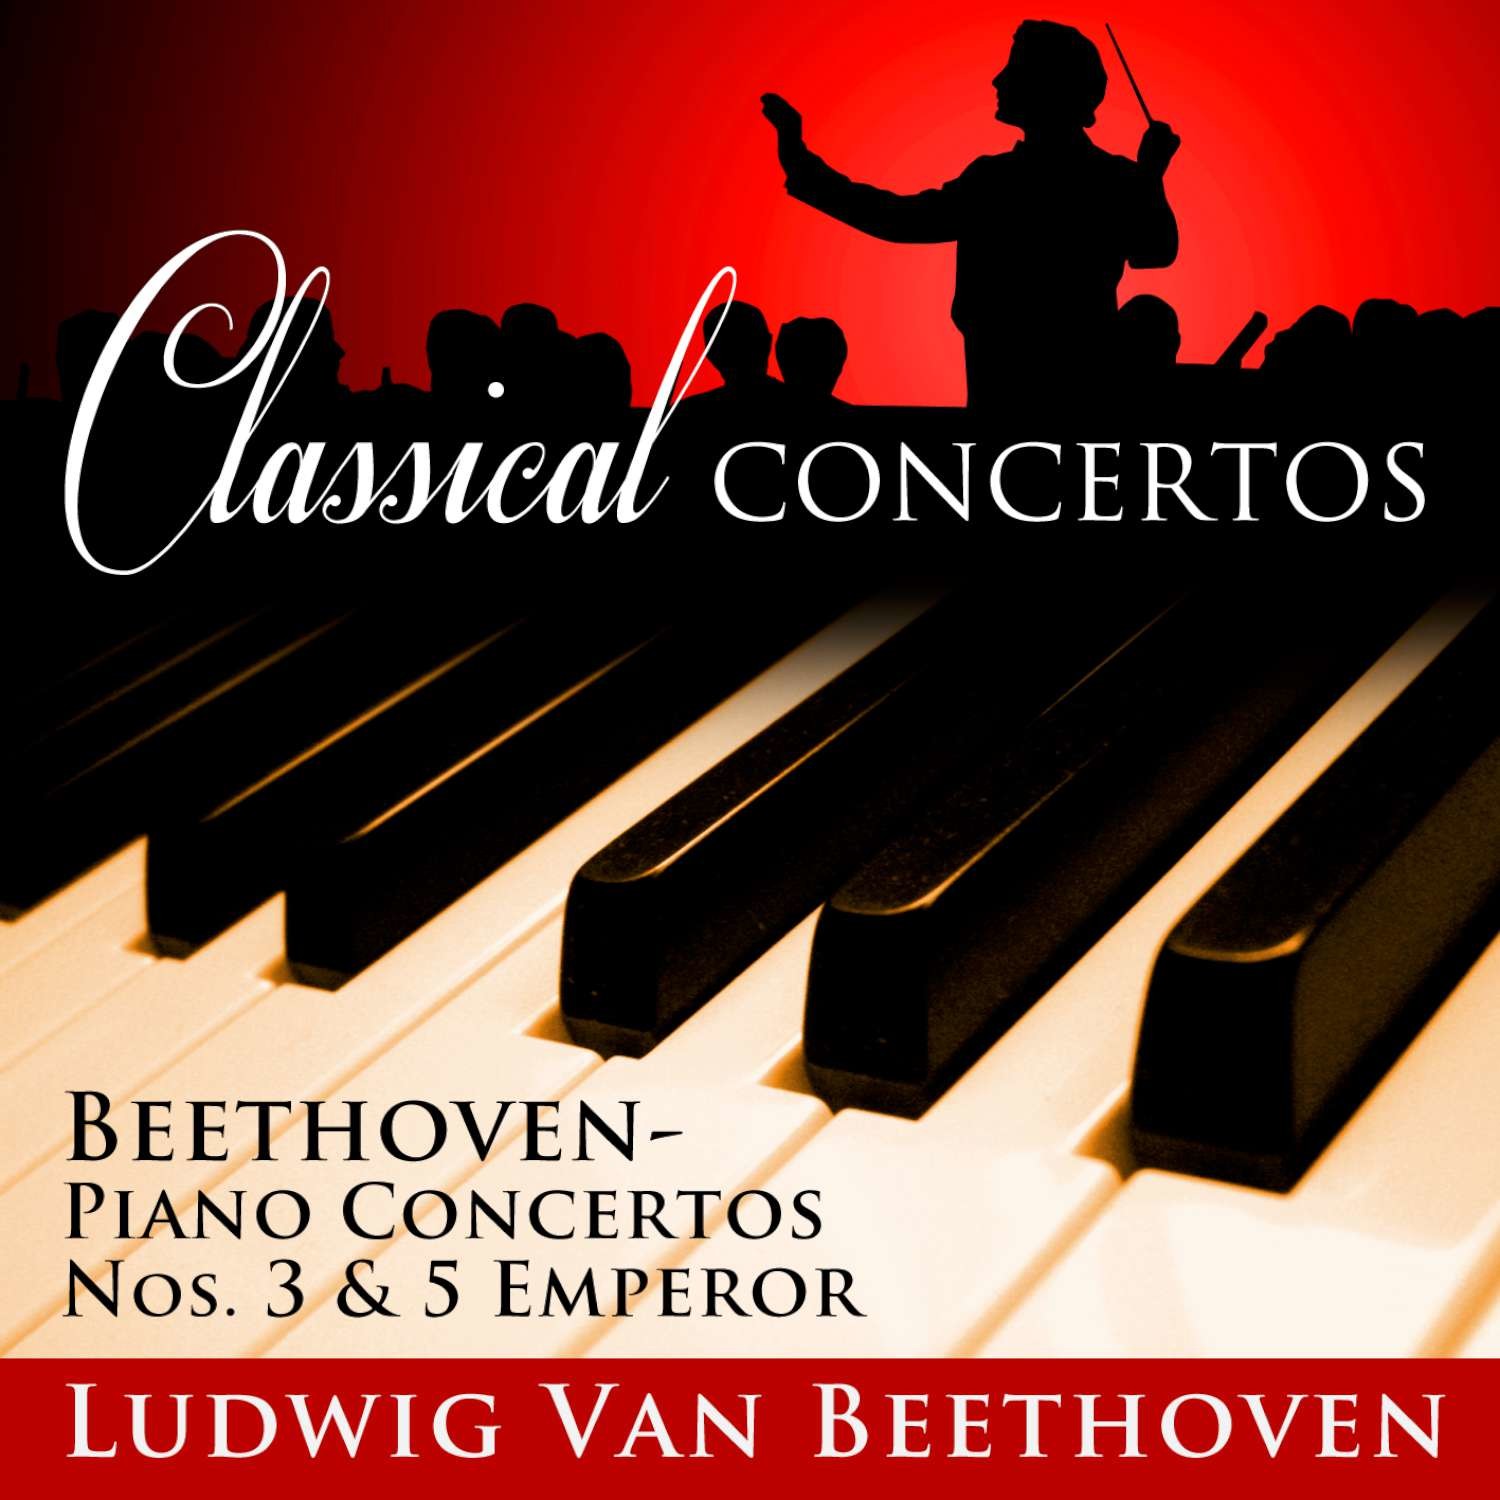 Classical Concertos - Beethoven, Piano Concertos Nos. 3 and 5 Emperor